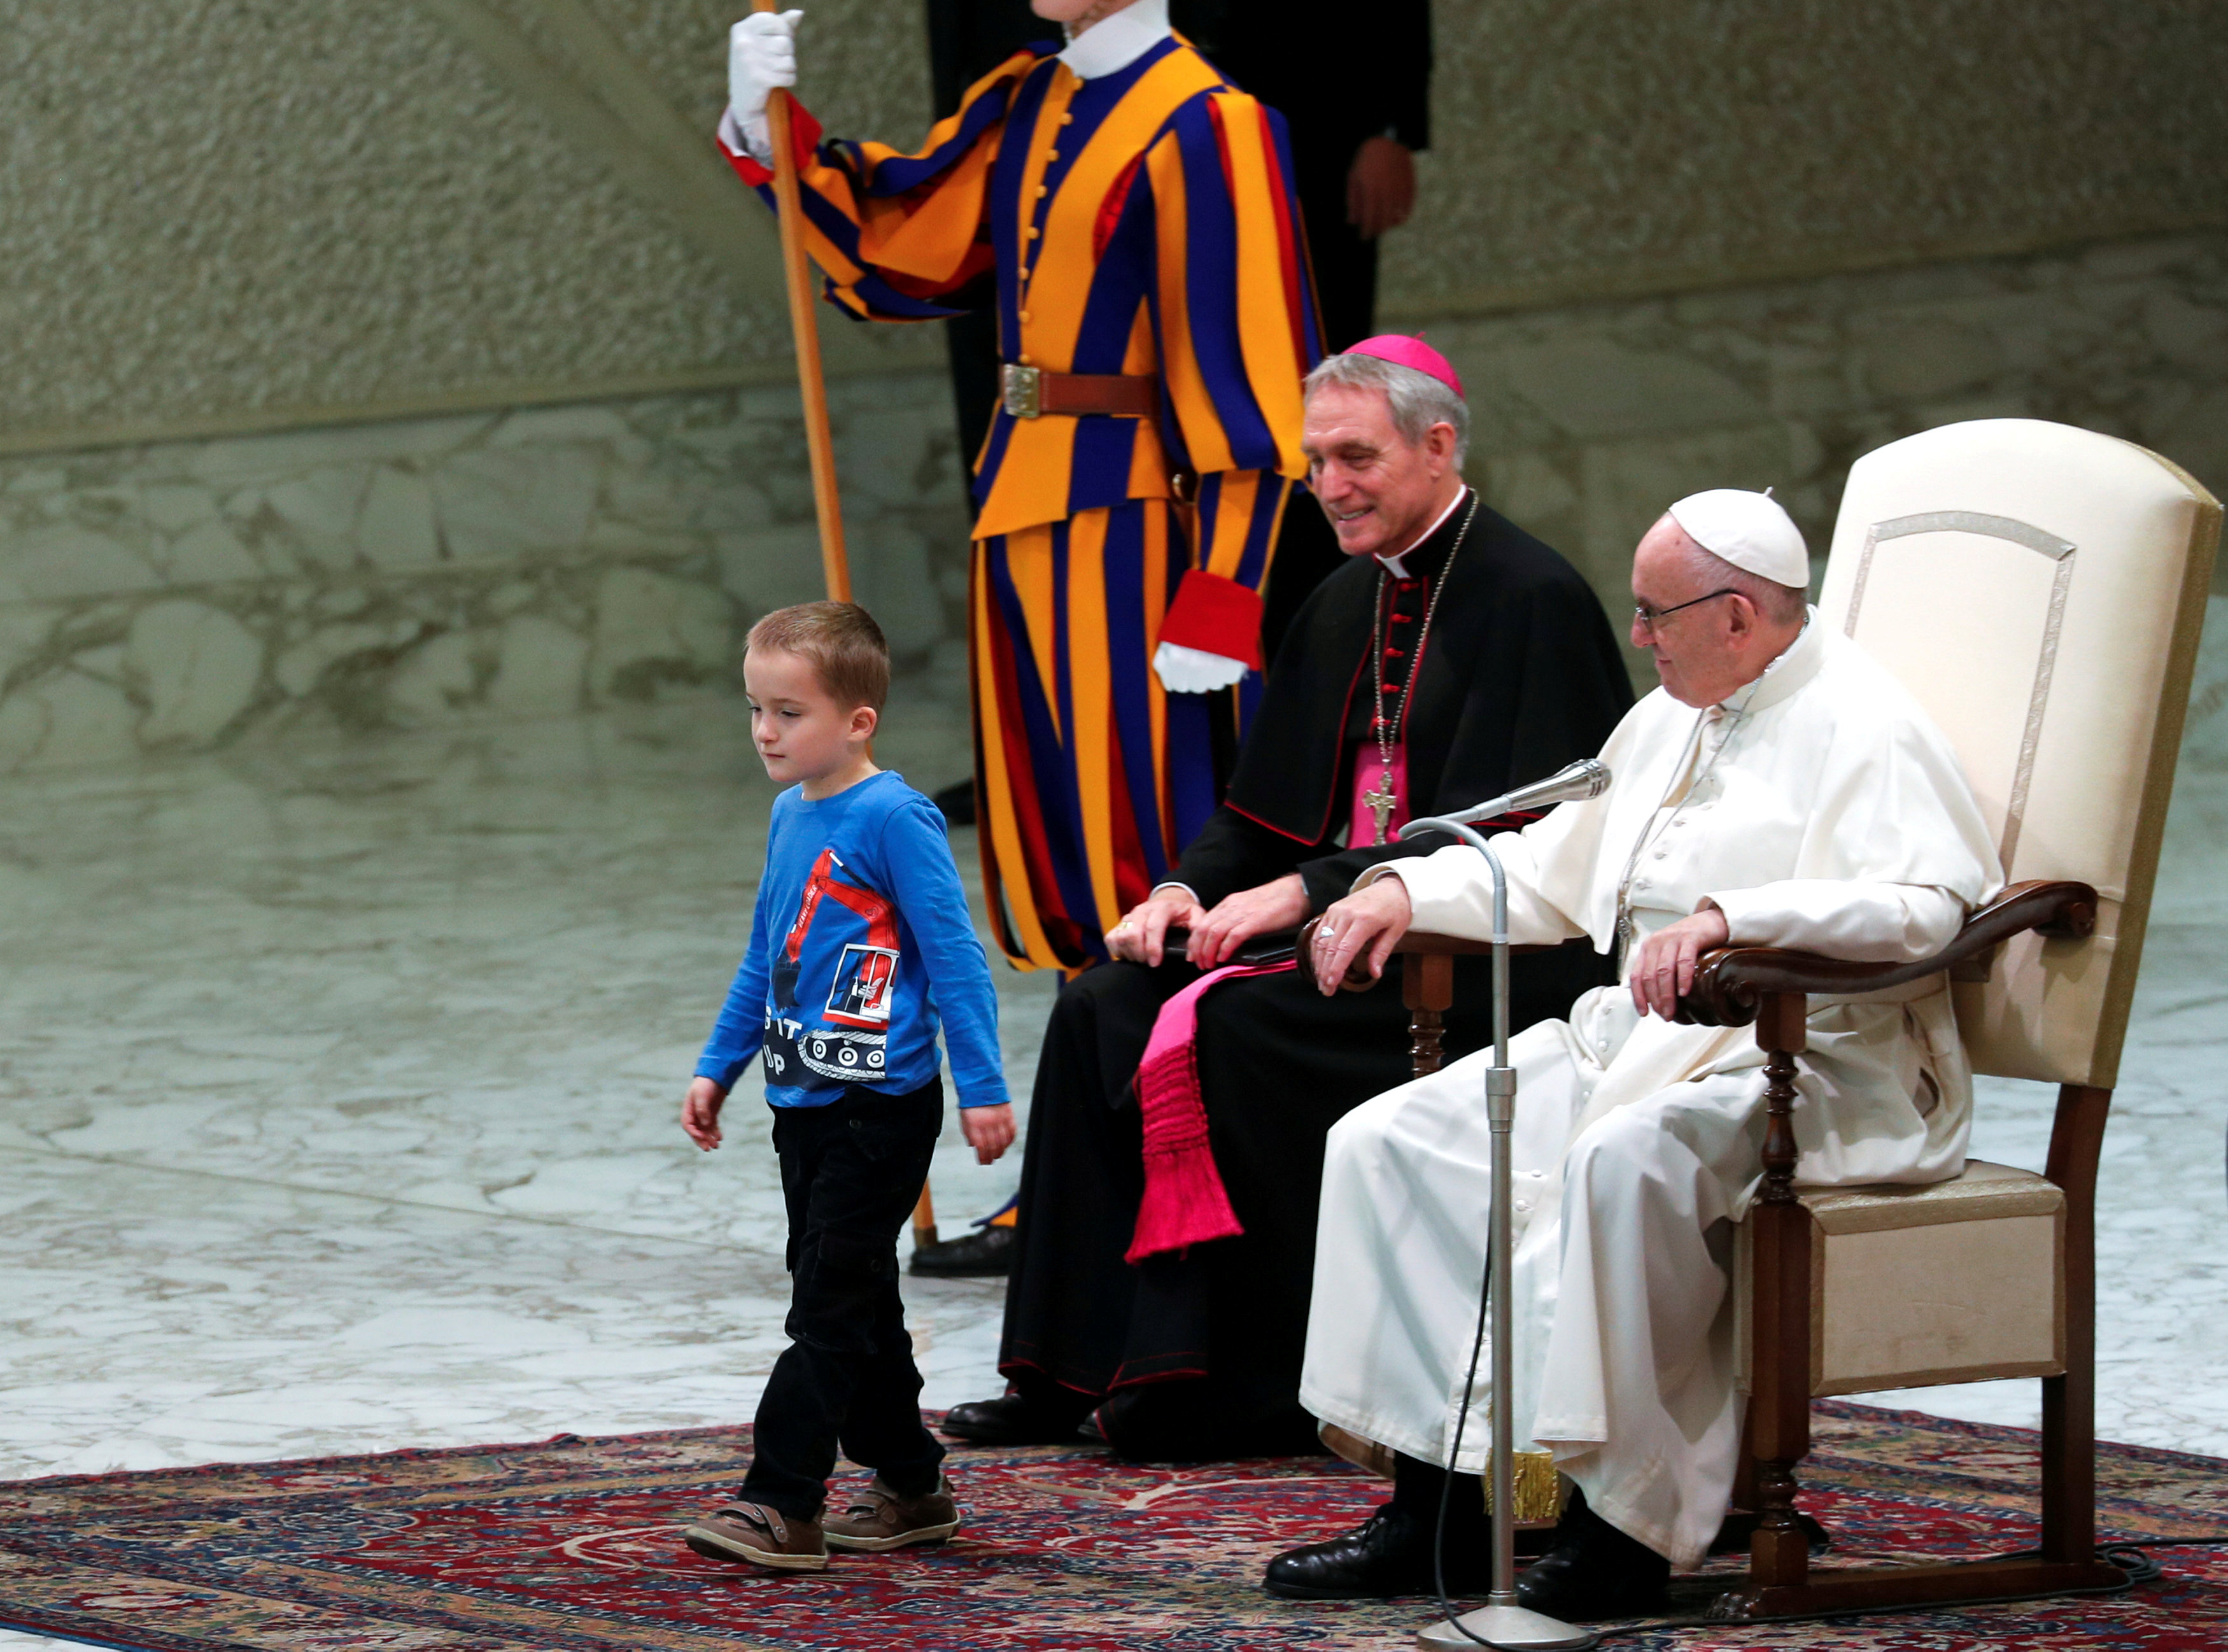 الطفل يسير أمام البابا بأريحية